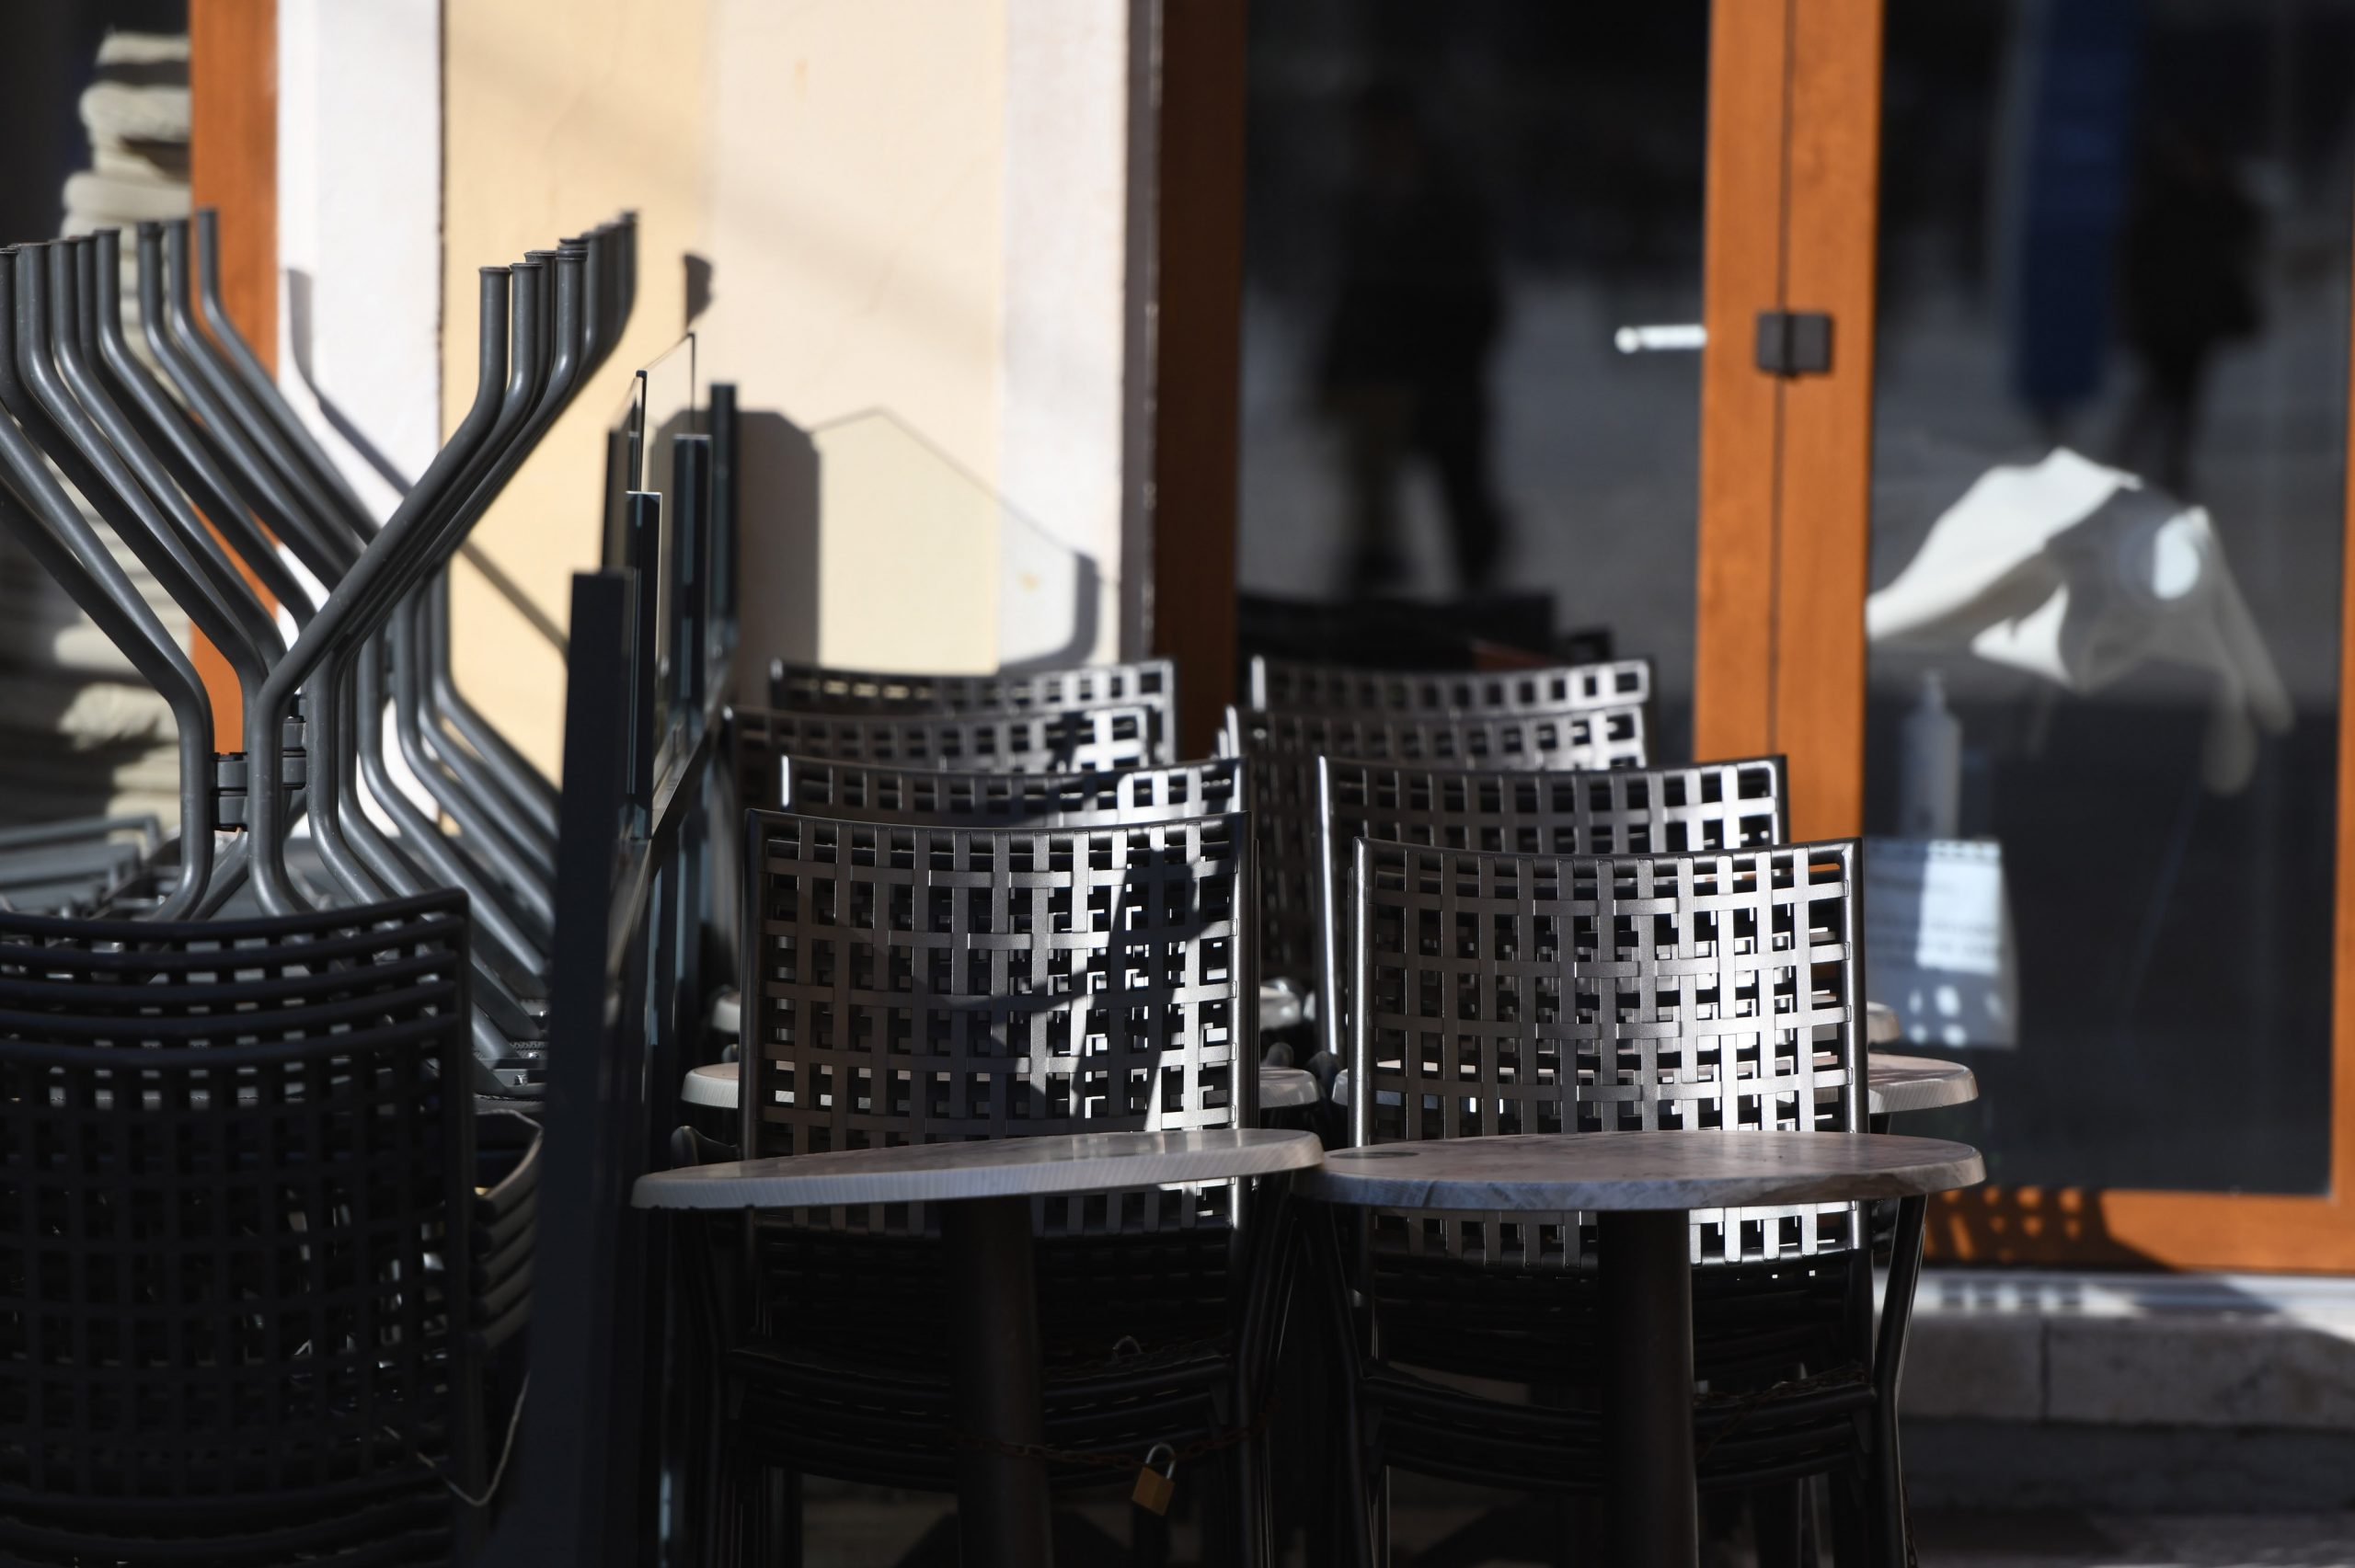 26.01.2021., Sibenik - Vlasnici zatvorenih kafica i restorana iscekuju novo popustanje mjera stozera civilne zastite.
Photo: Hrvoje Jelavic/PIXSELL